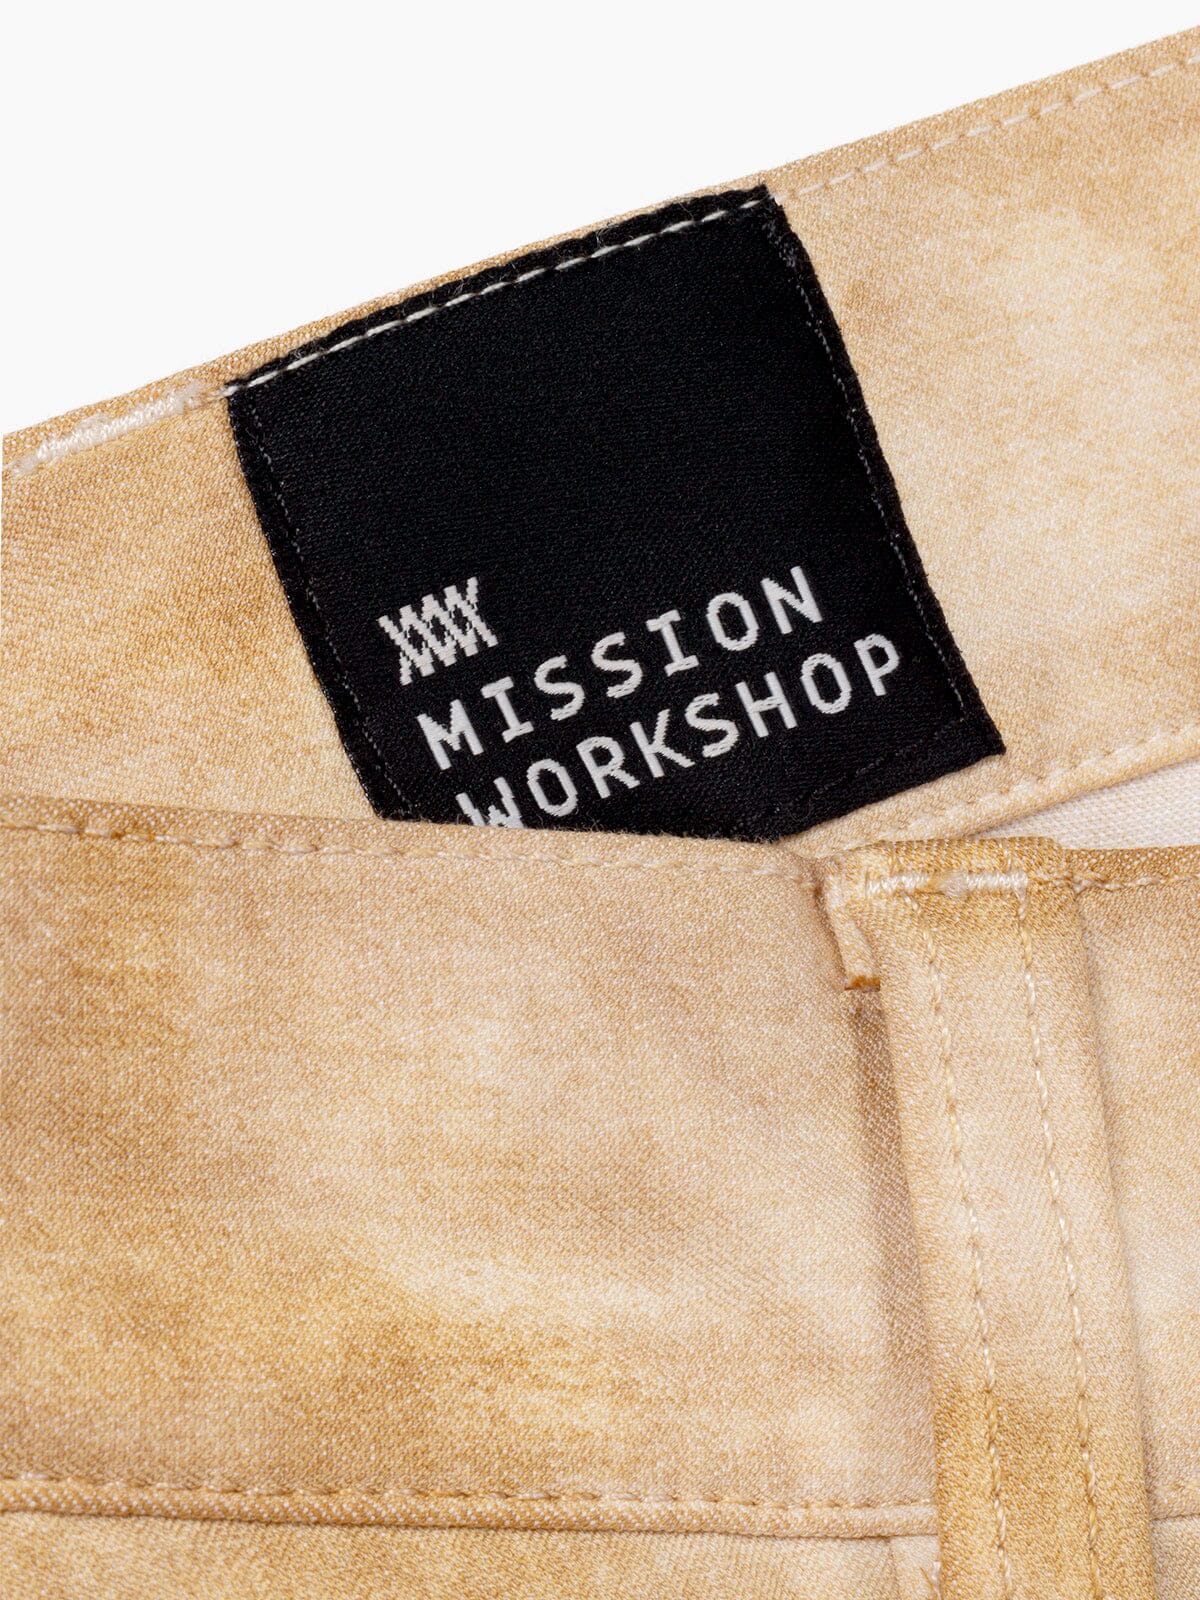 Paragon by Mission Workshop - Weersbestendige tassen & technische kleding - San Francisco & Los Angeles - Gemaakt om lang mee te gaan - Voor altijd gegarandeerd